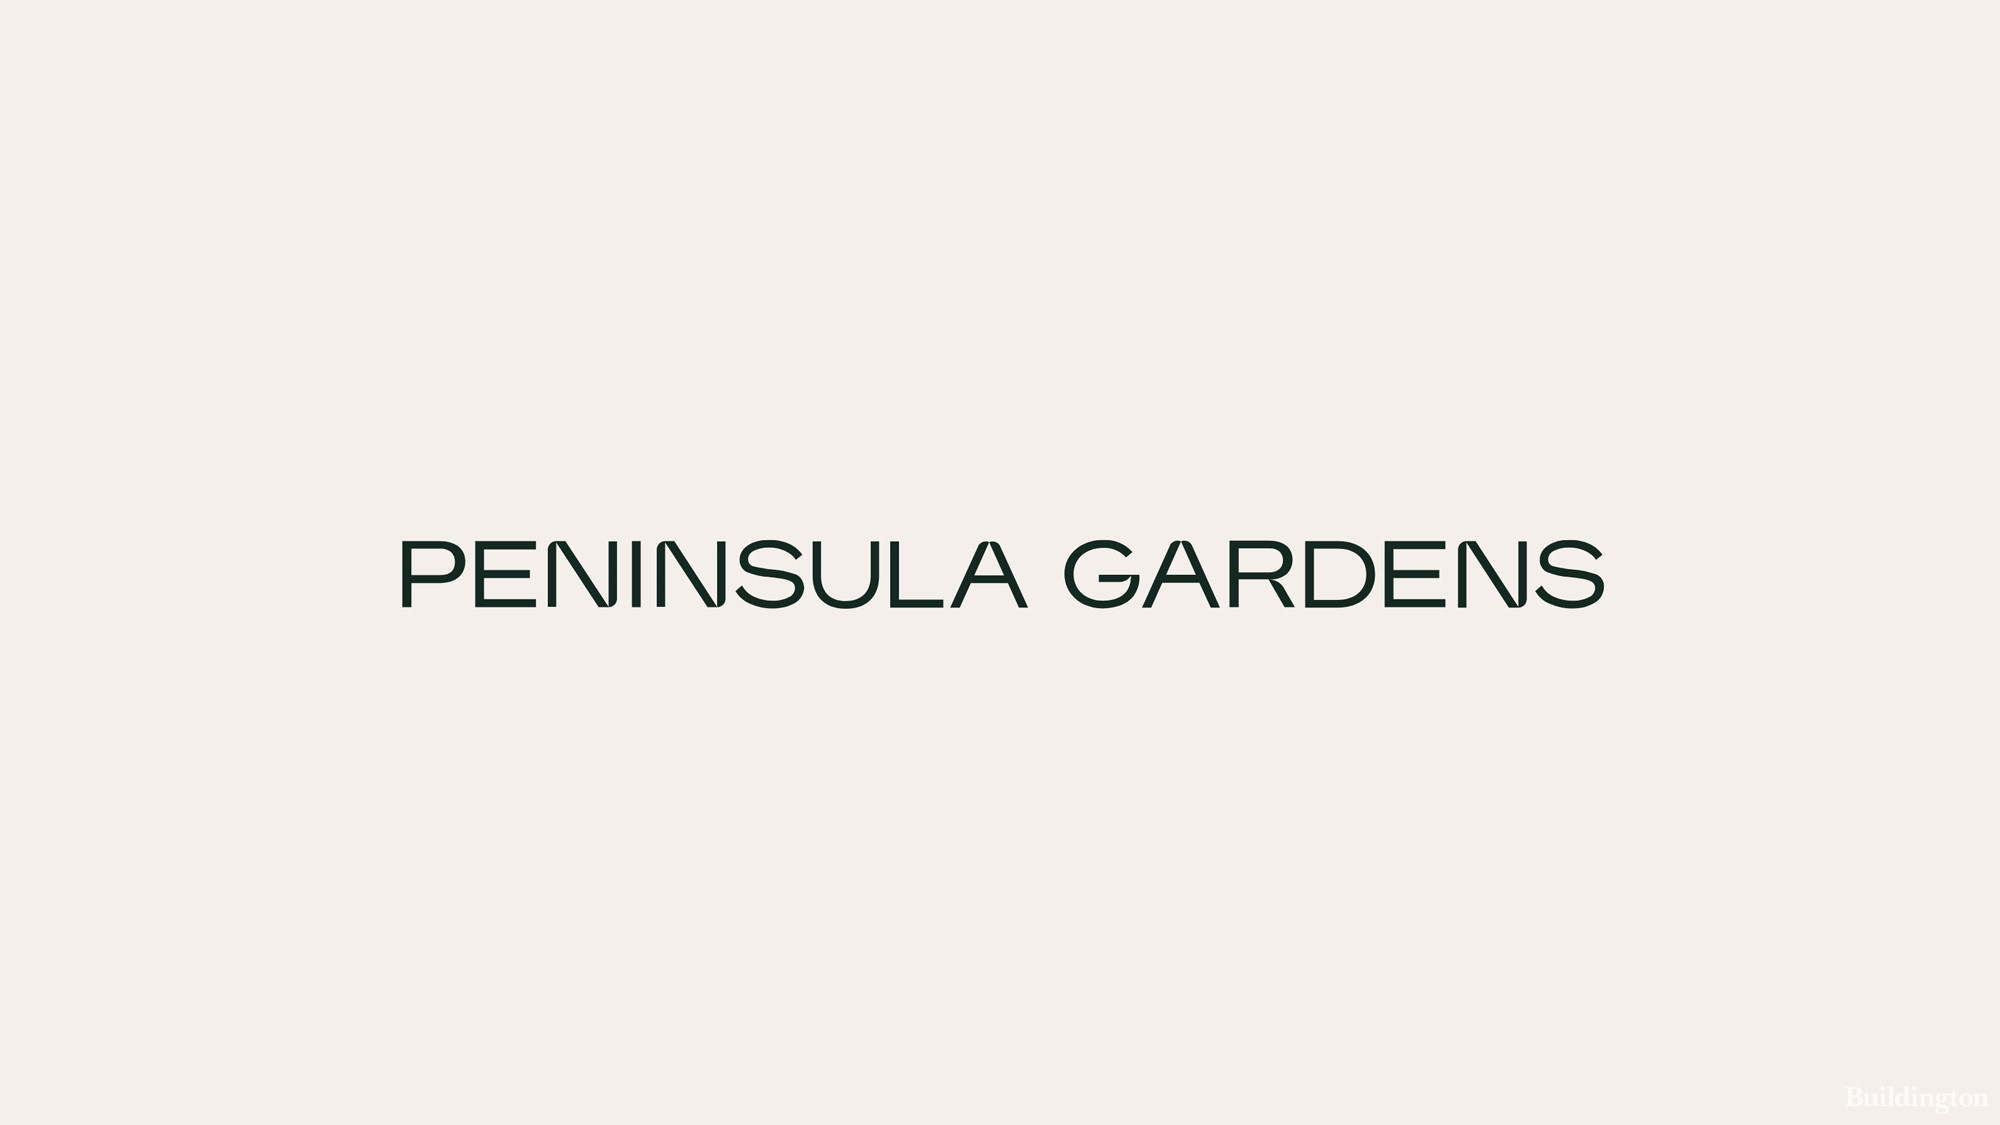 Peninsula Gardens development logo cover